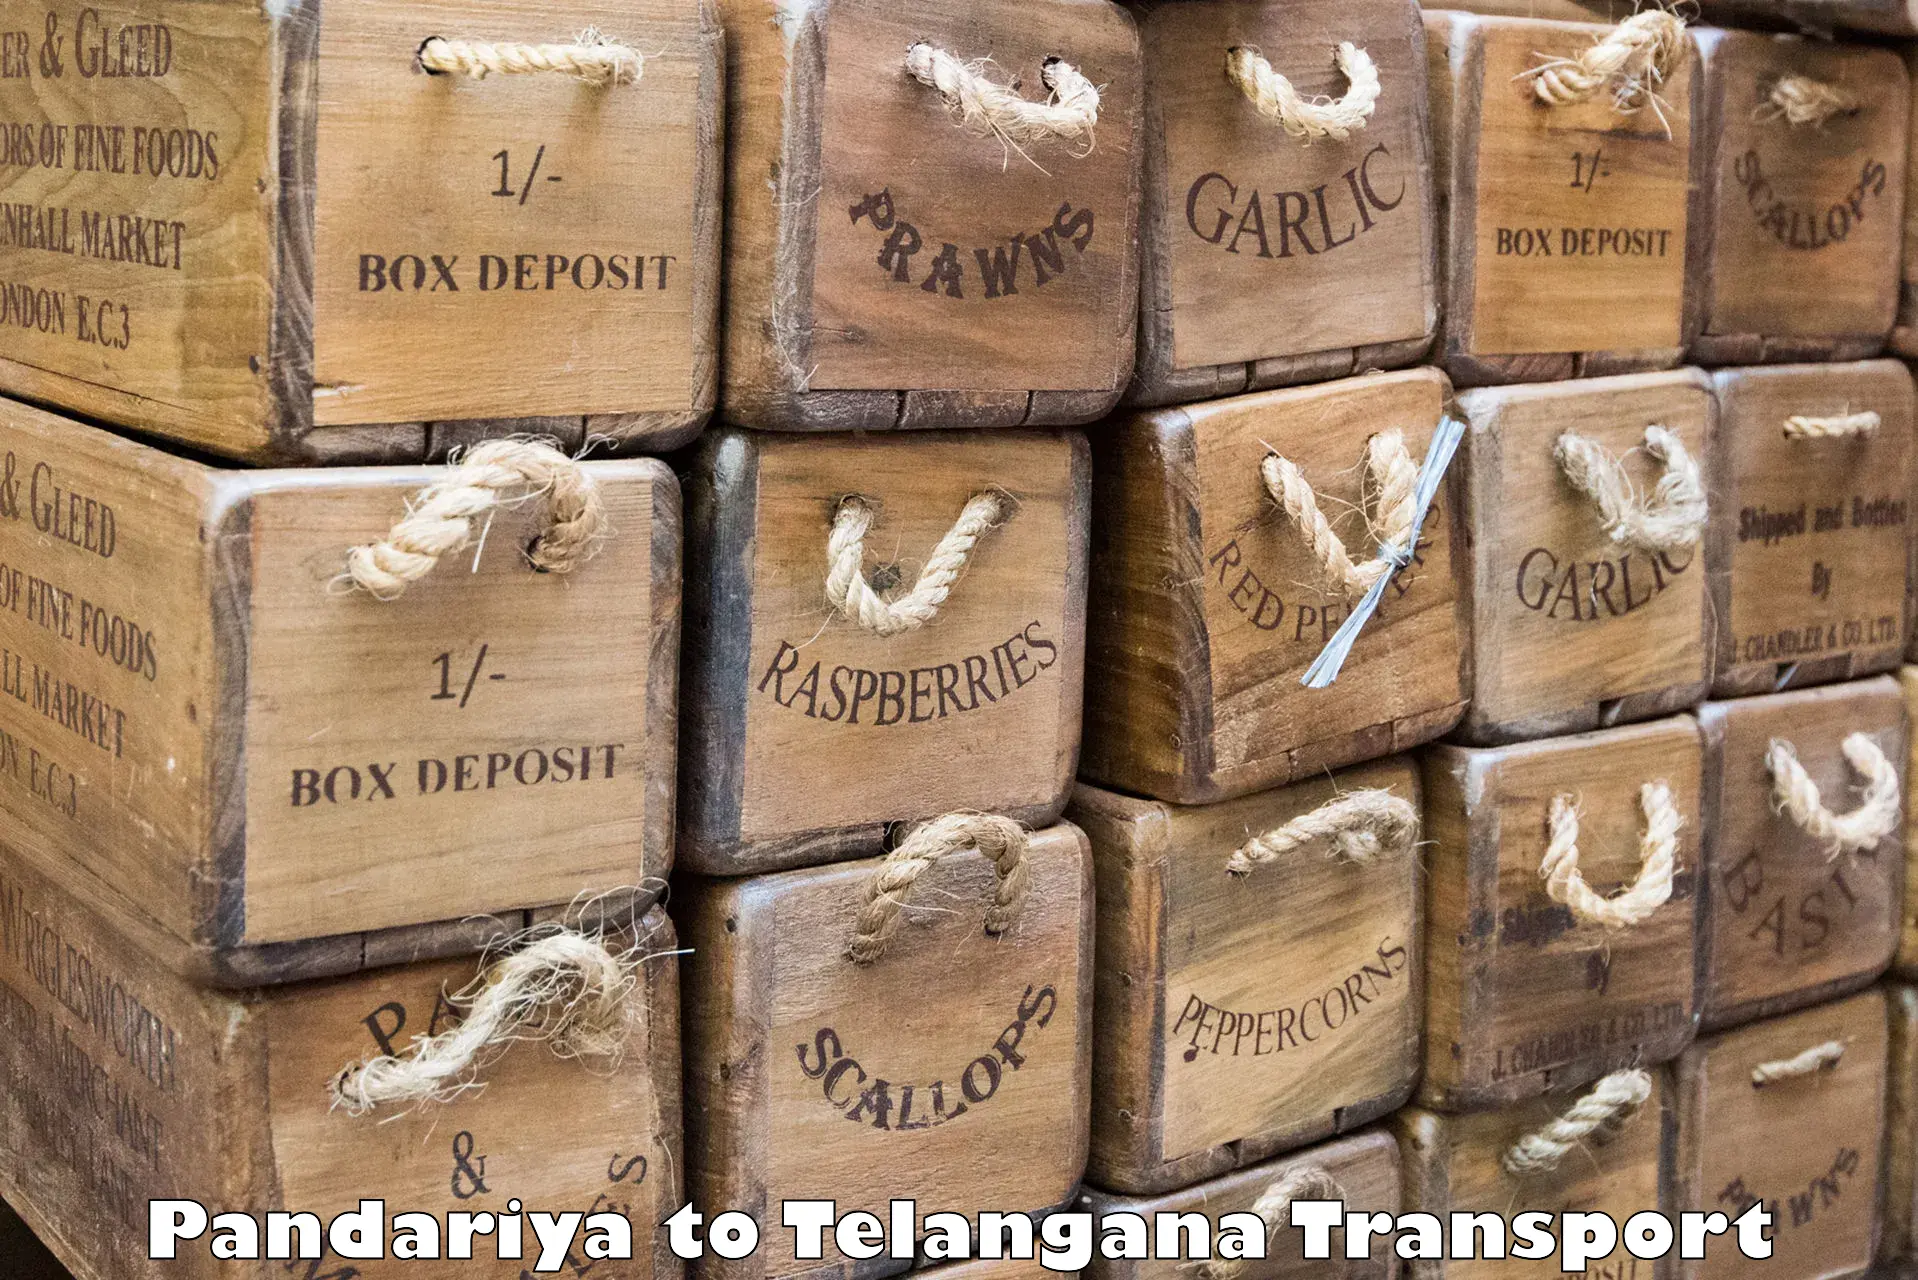 Nearest transport service Pandariya to Madhavaram